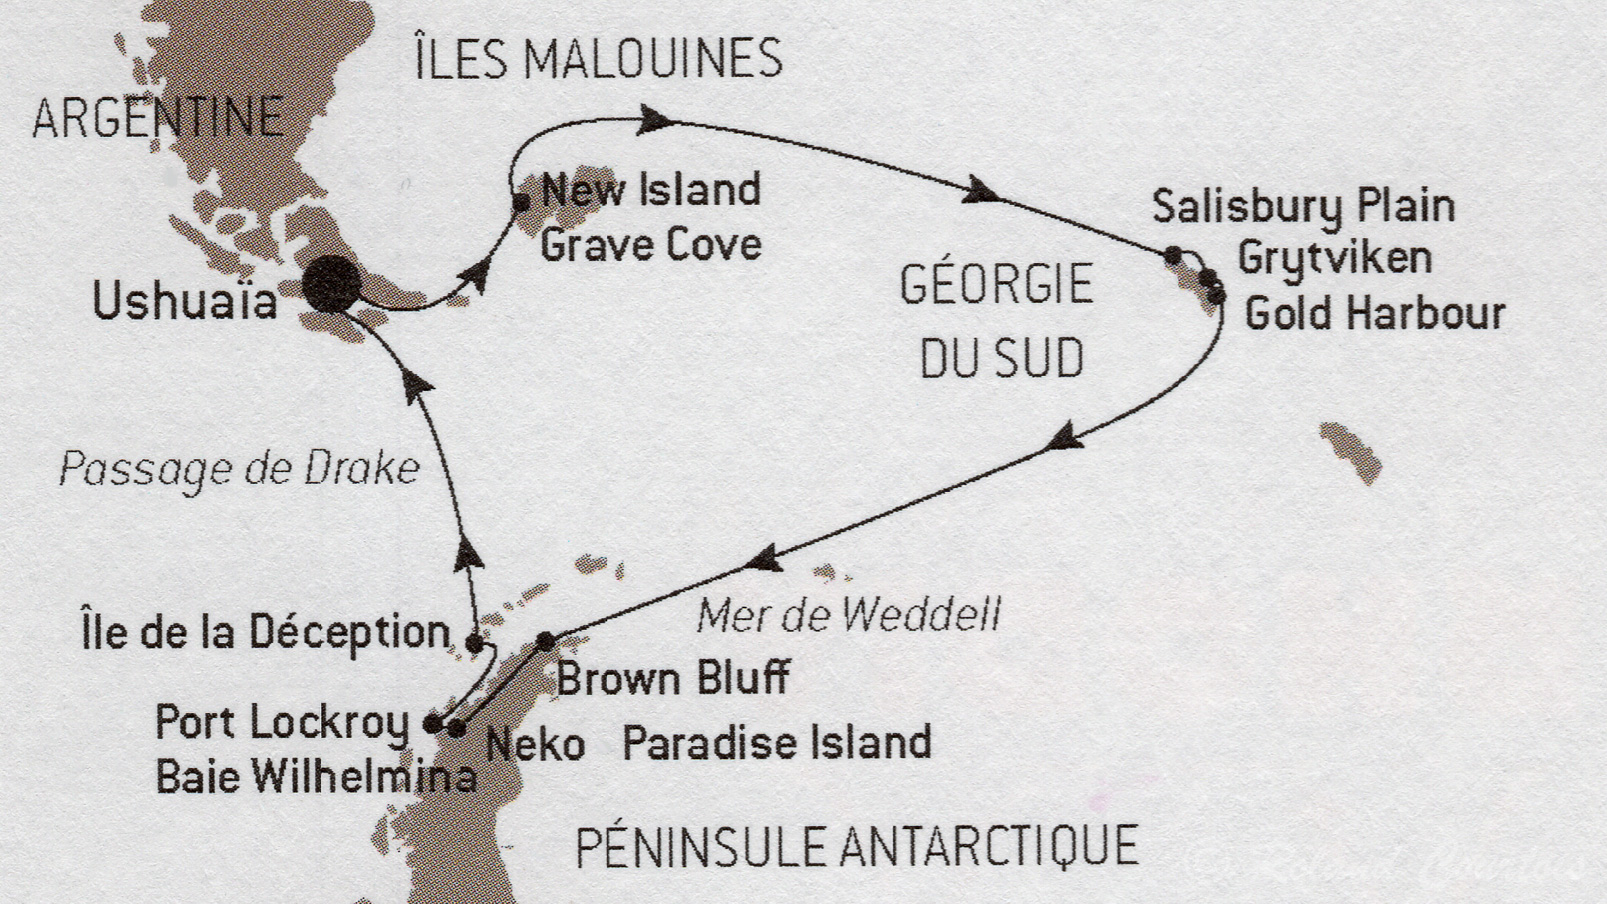 L'itinéraire de la Grande Boucle Australe. Une croisière de 17 jours à partir d'Ushuaia vers les iles Malouines (Falkland)  et la Géorgie du Sud, avant de descendre plein Sud vers la Péninsule Antarctique.